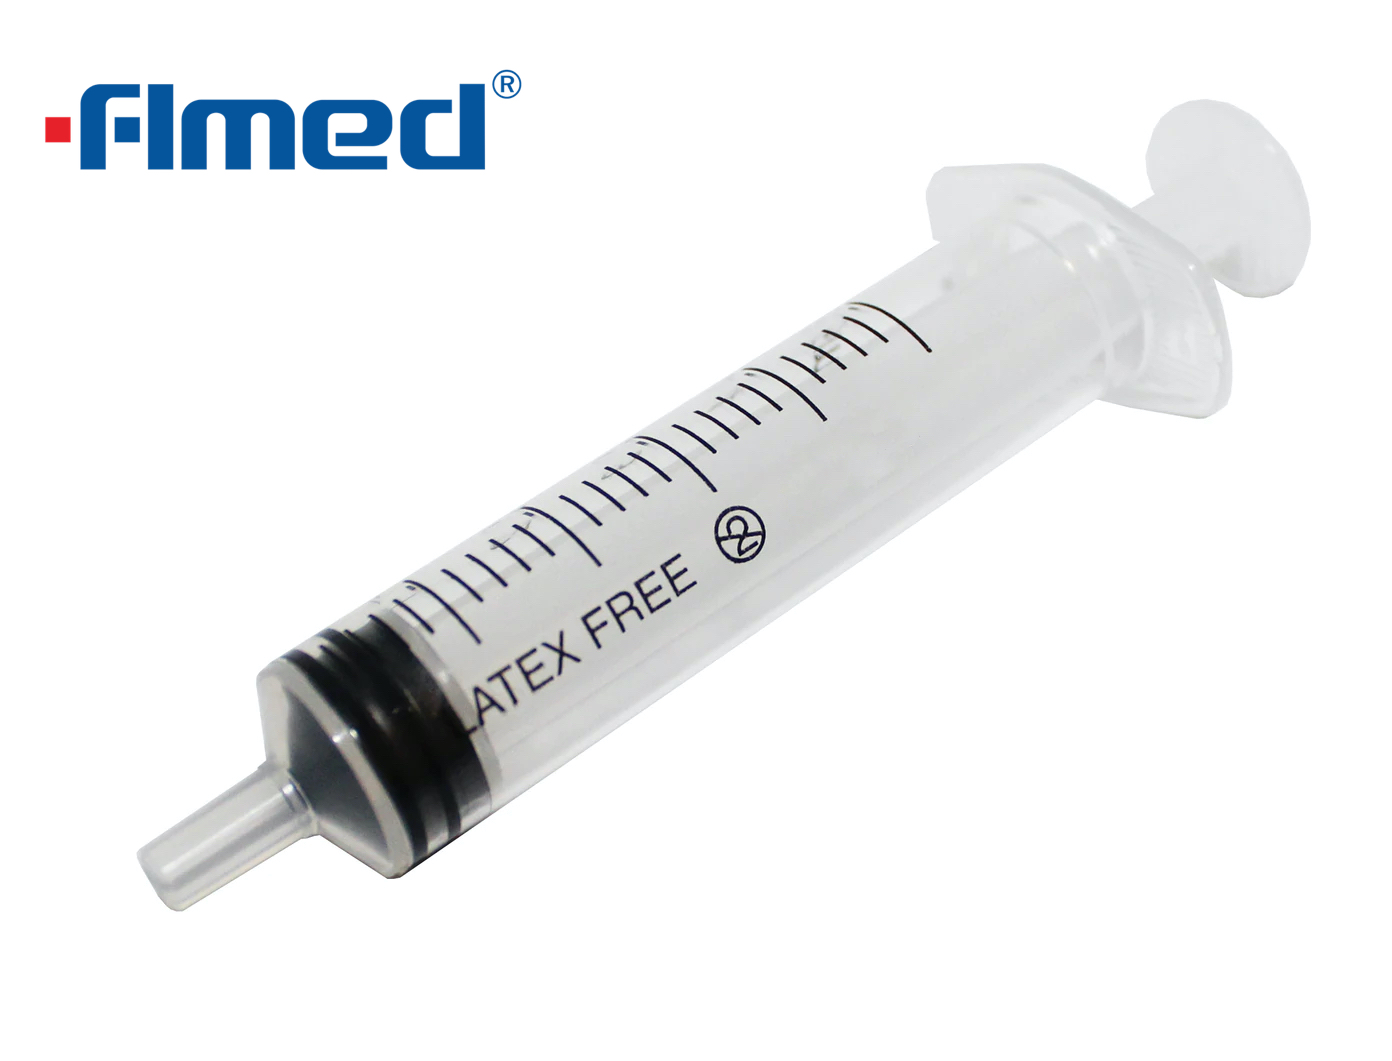 5ml Syringe & Needle 21g x 1.5" inch